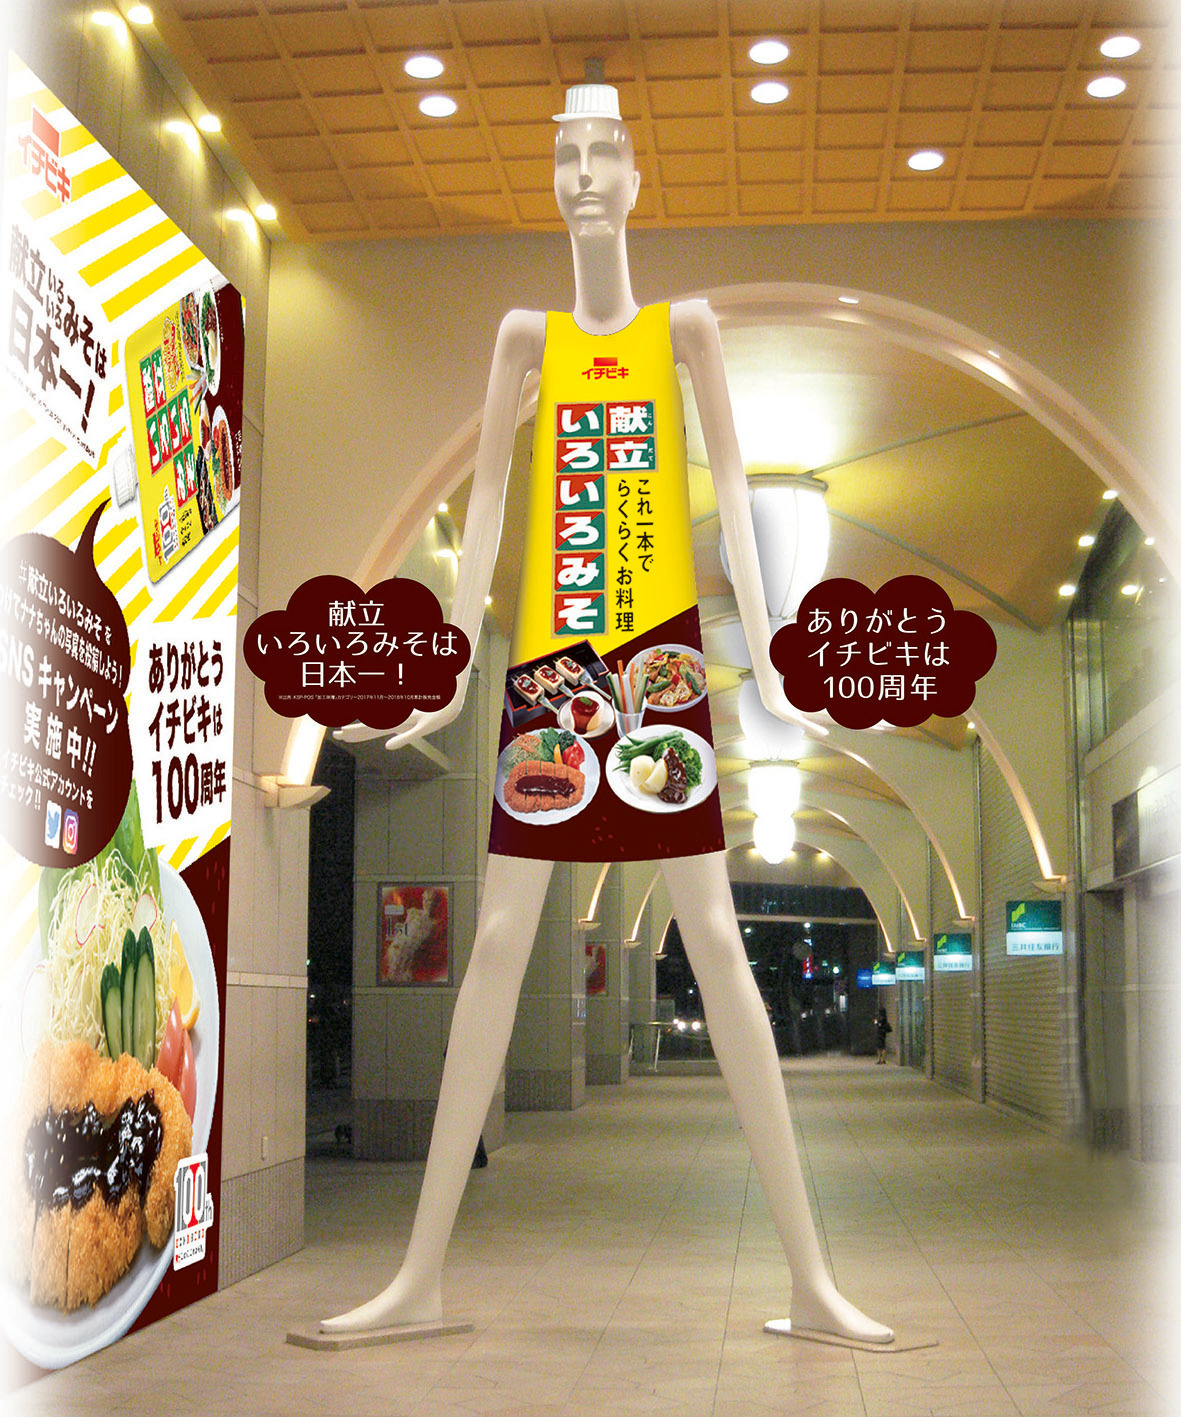 名古屋のシンボル ナナちゃん人形 が献立いろいろみそ仕様のワンピース姿に変身 100周年記念事業の一環として実施 イチビキ株式会社のプレスリリース